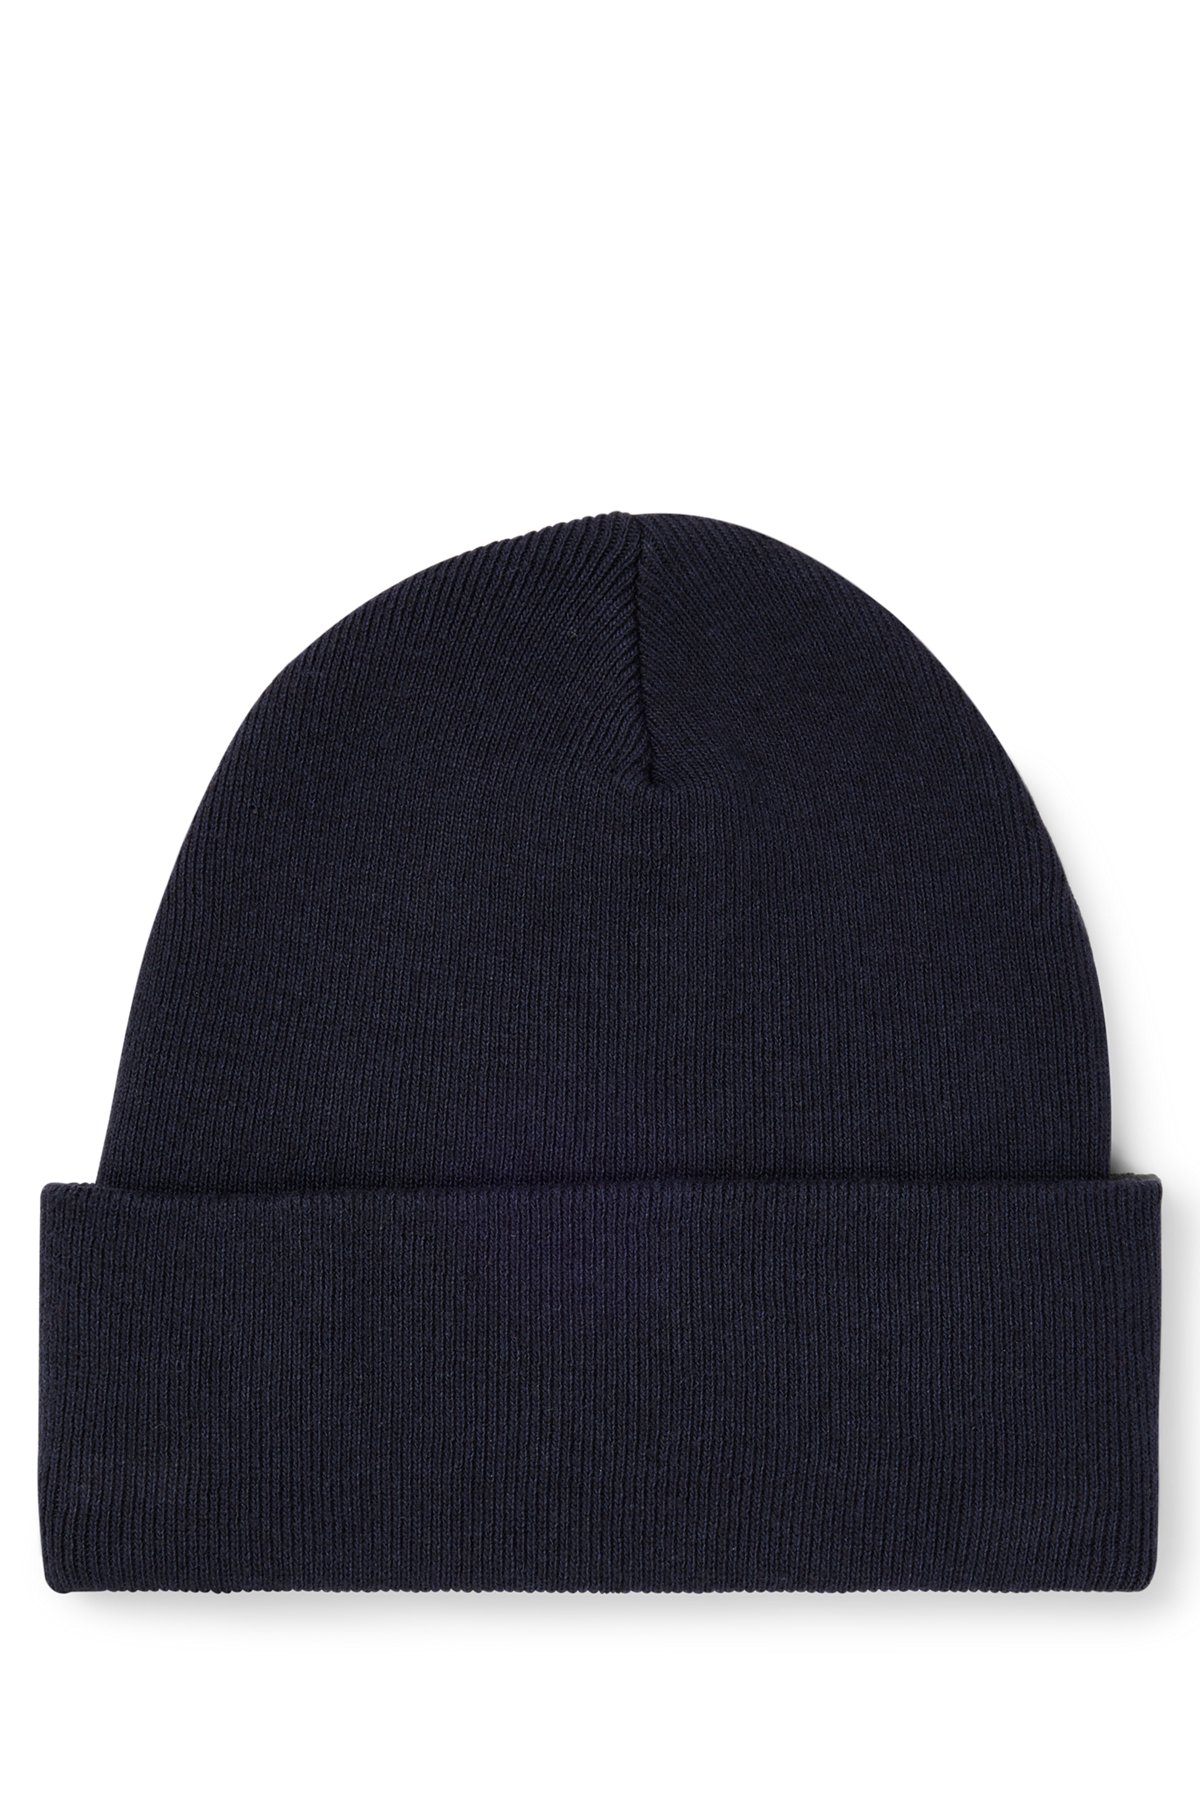 Knitted beanie hat with logo detail, Dark Blue